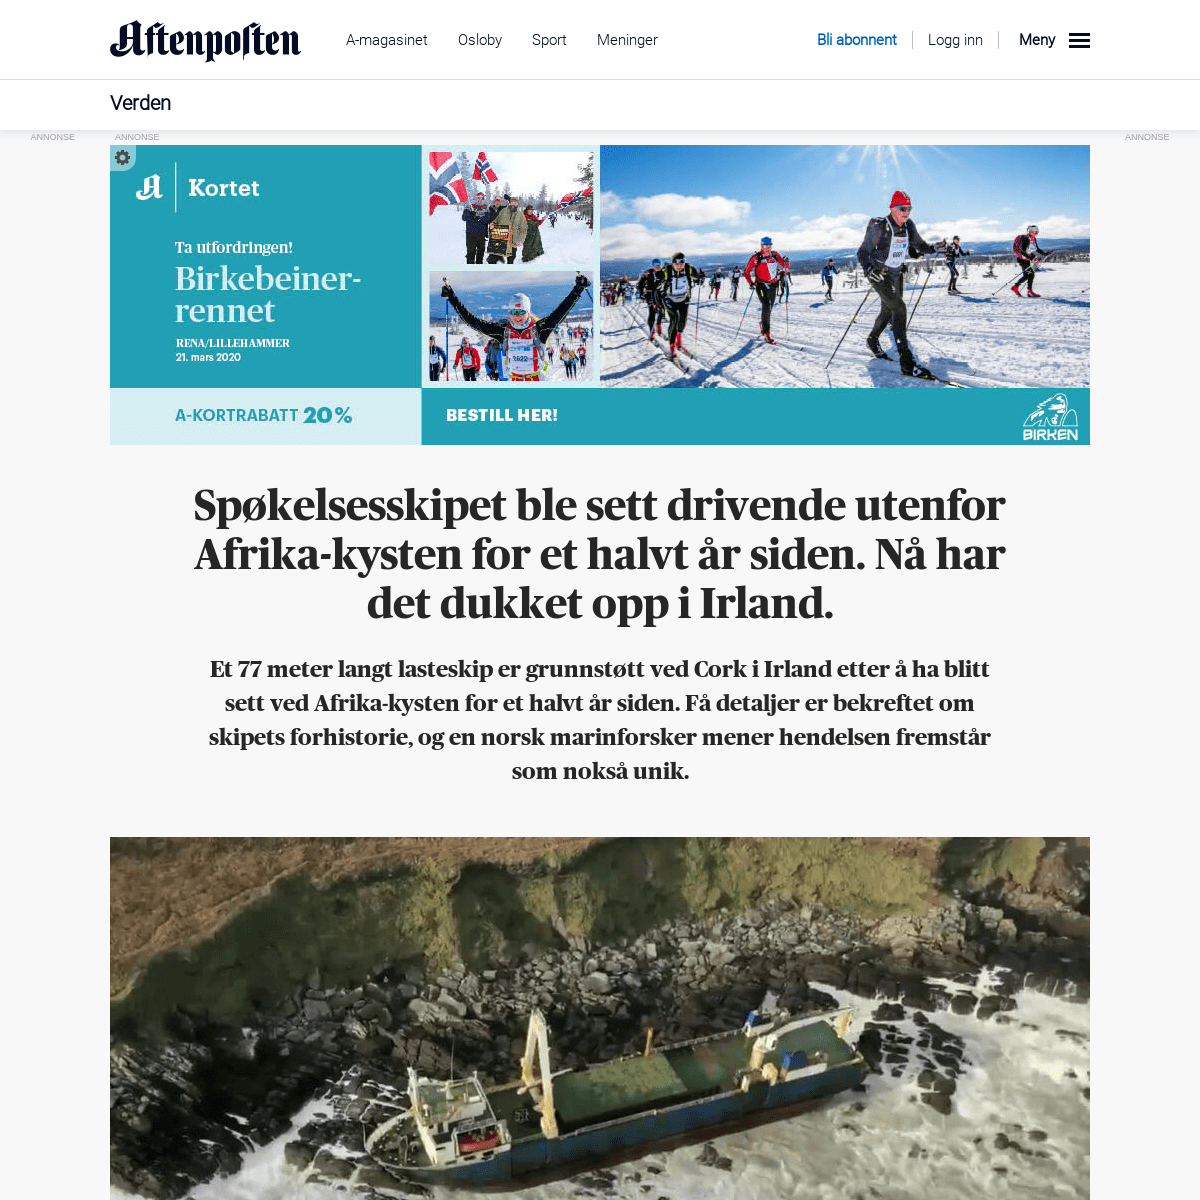 A complete backup of www.aftenposten.no/verden/i/jdJm9w/Spokelsesskipet-ble-sett-flytende-utenfor-Afrika-kysten-for-et-halvt-ar-